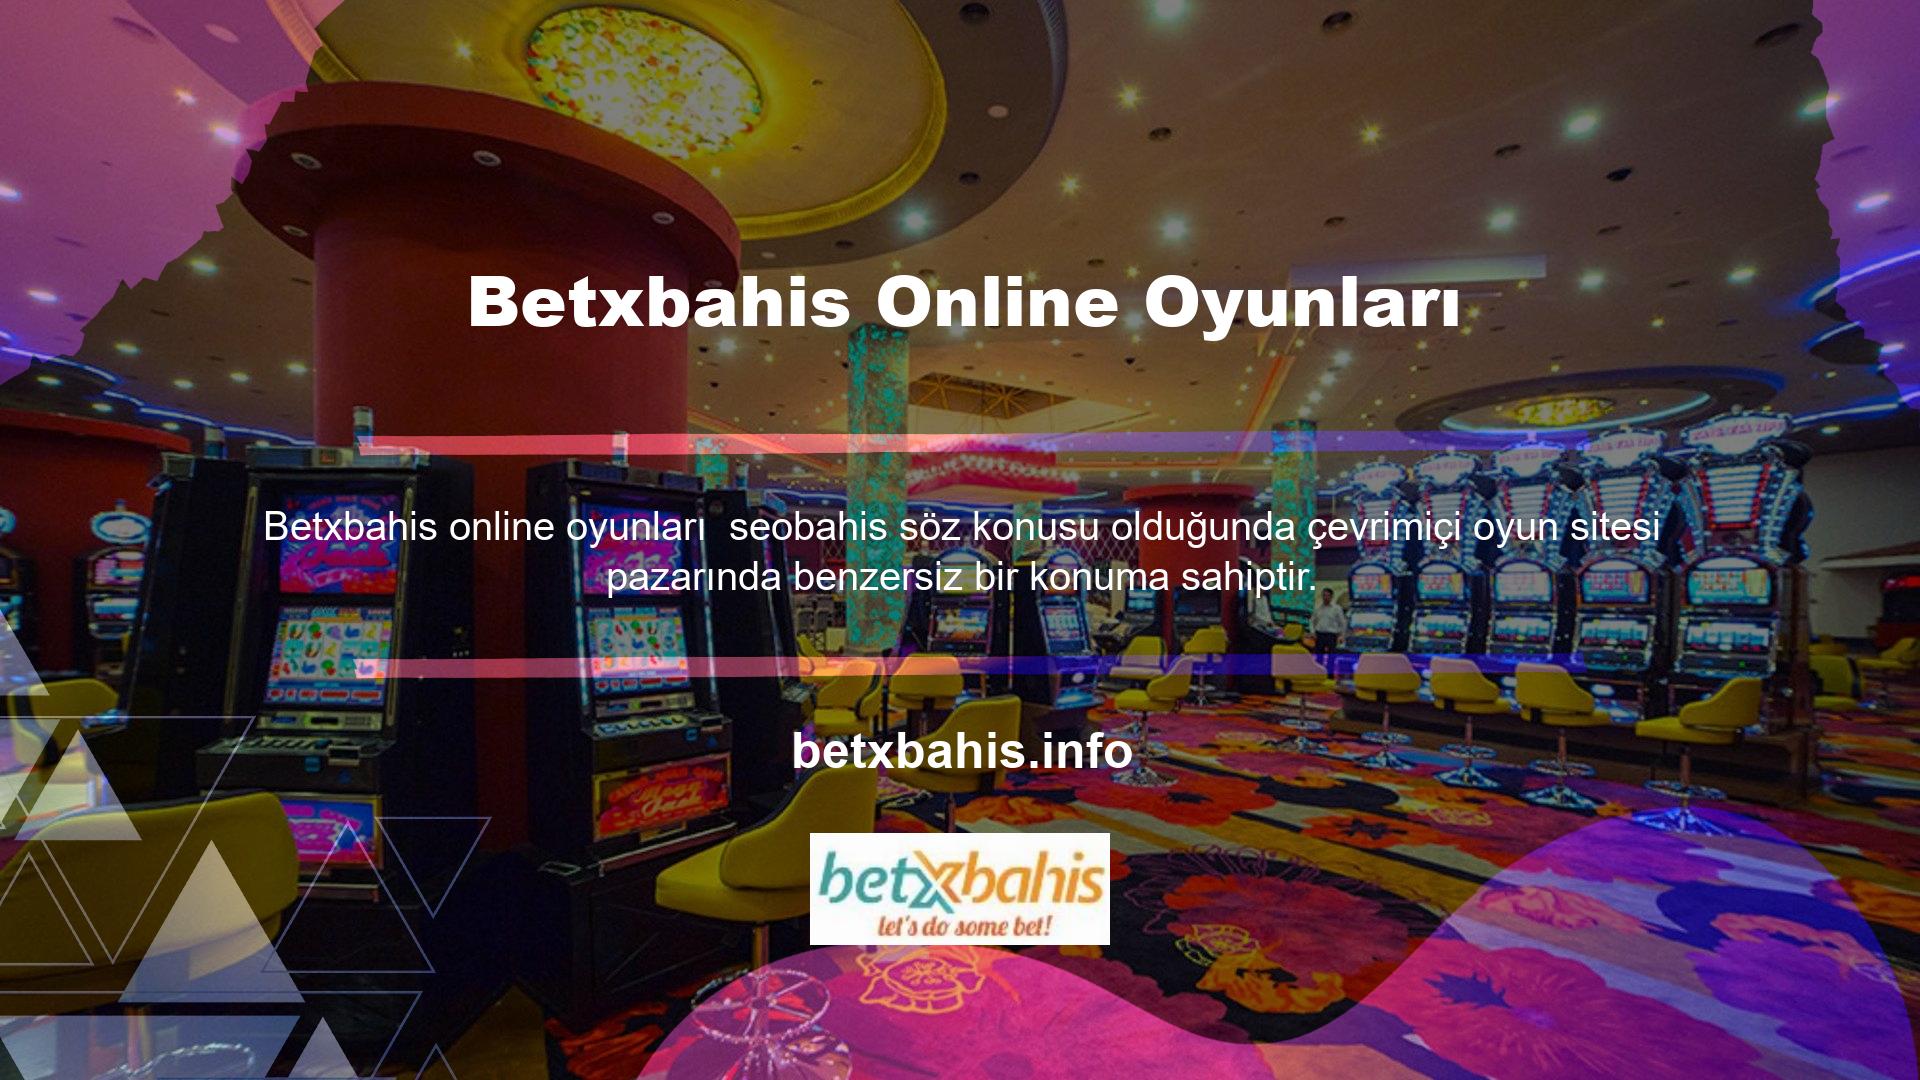 Bu web sitesi doğru uluslararası adrese sahiptir ve TİB tarafından yasaklı Casino sitesi olarak kabul edilmektedir